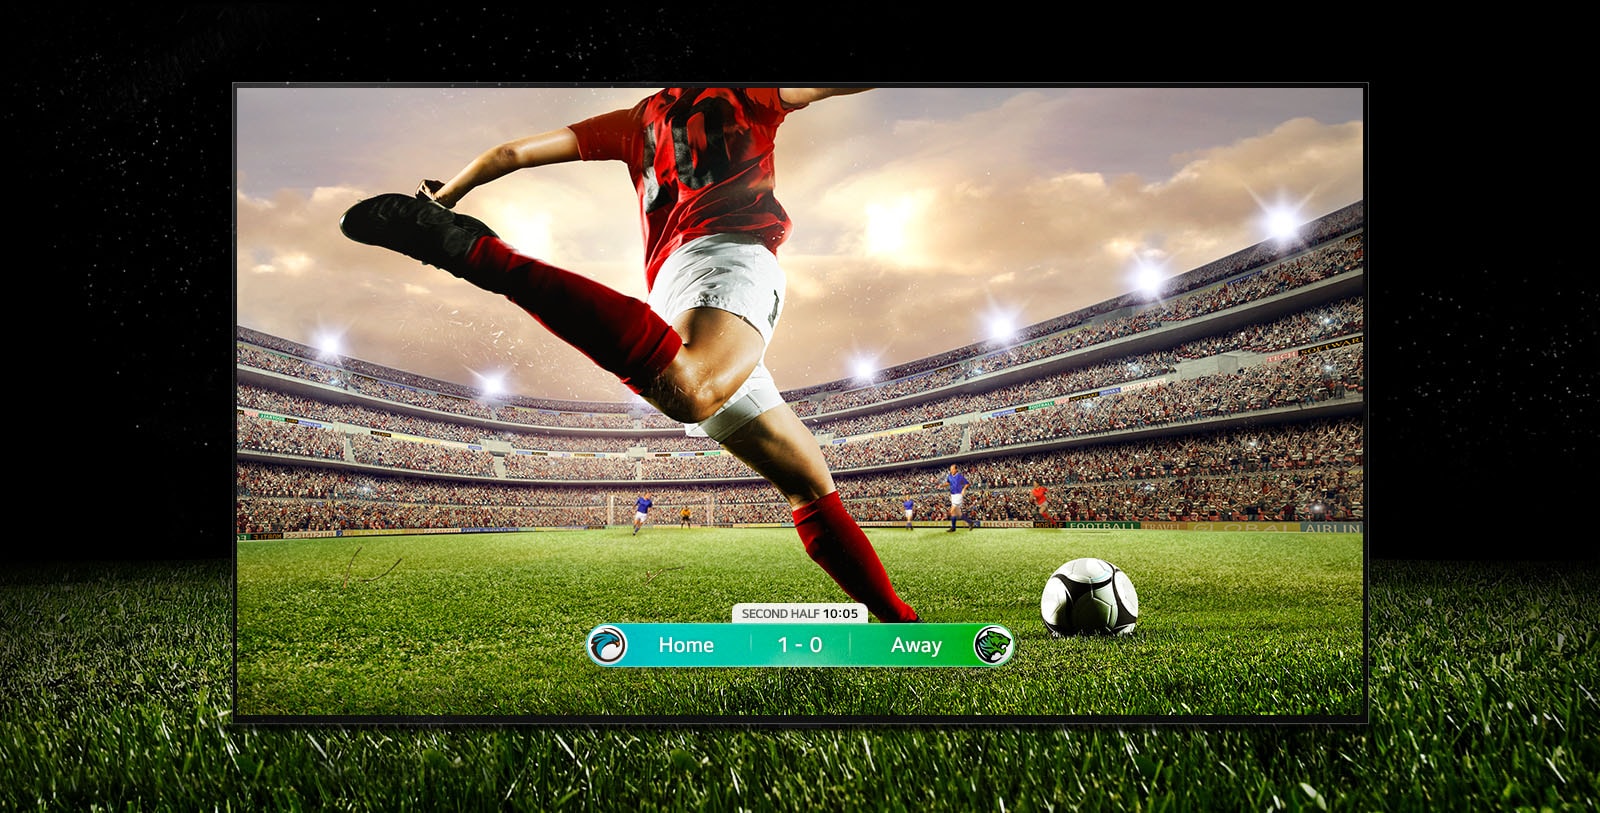 Obrázek displeje zobrazující fotbalový zápas s hráčem v červeném dresu, který se chystá kopnout do míče přes stadion. Skóre hry je viditelné ve spodní části obrazovky. Zelená tráva z hřiště se táhne za obrazovku až k černému pozadí.